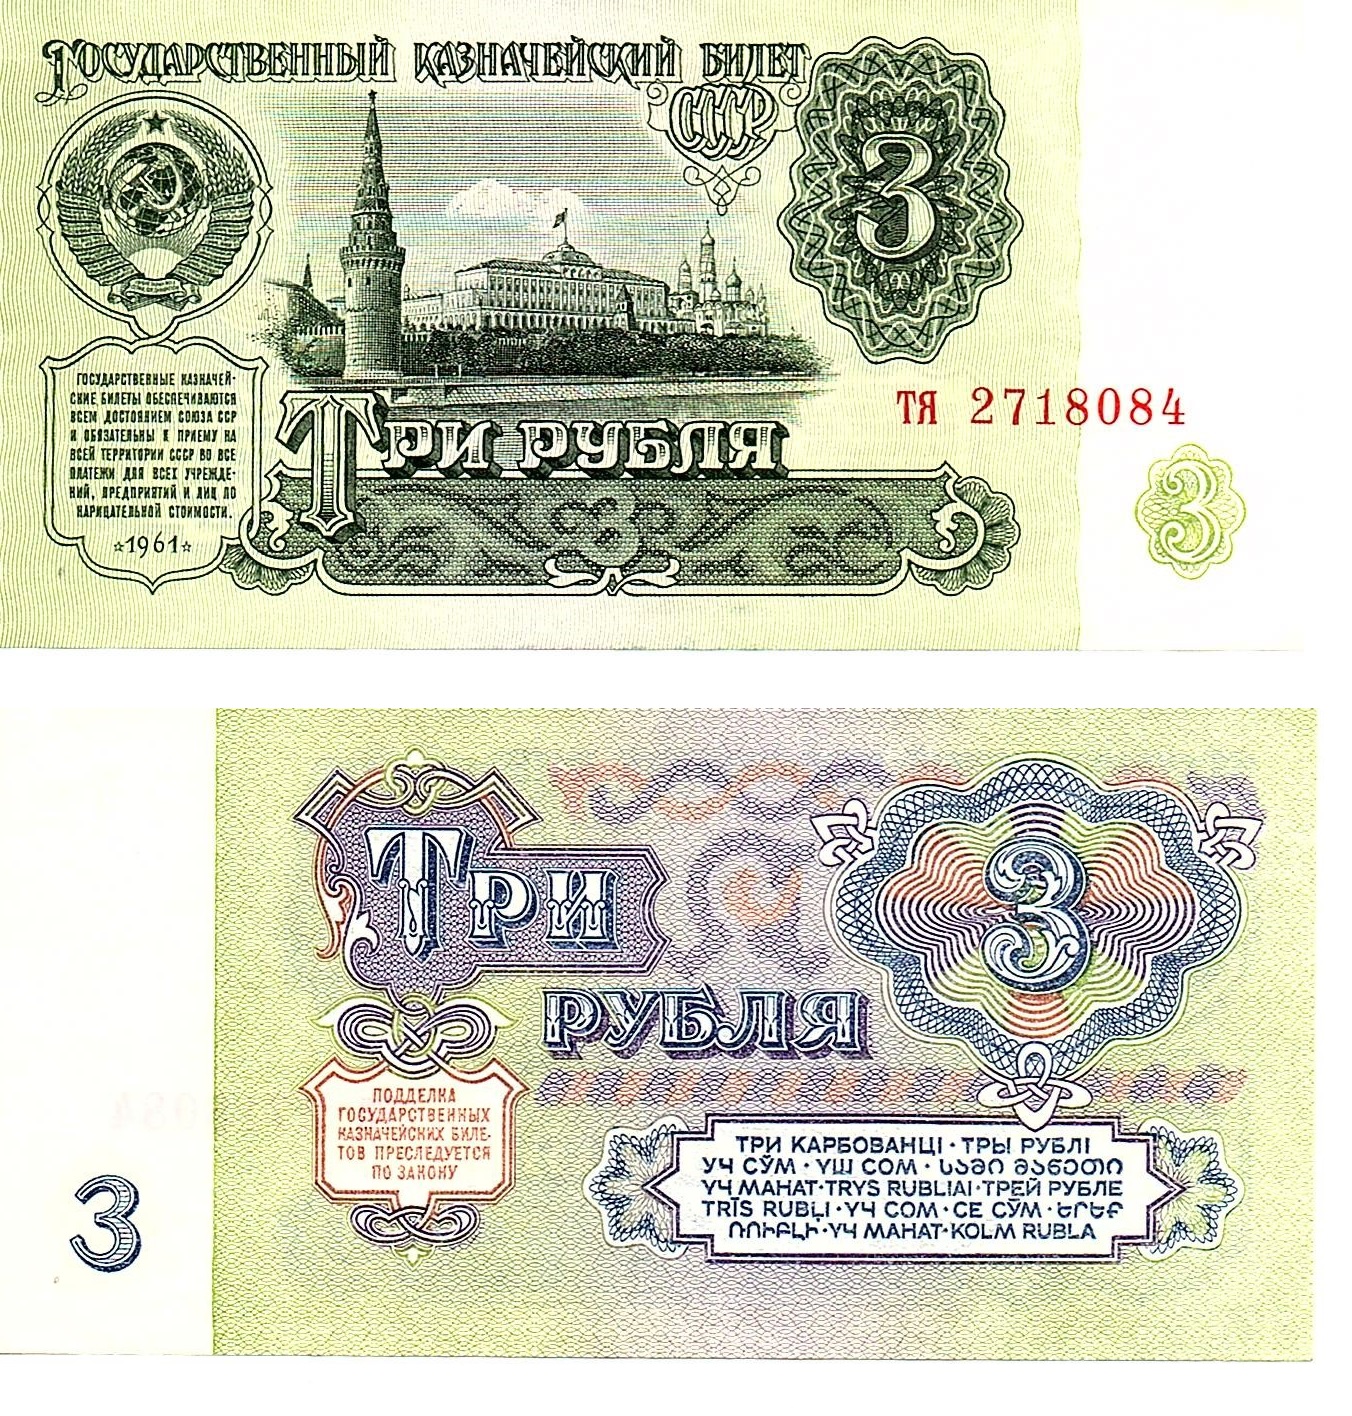 Russia #223/AU 3 Rublya